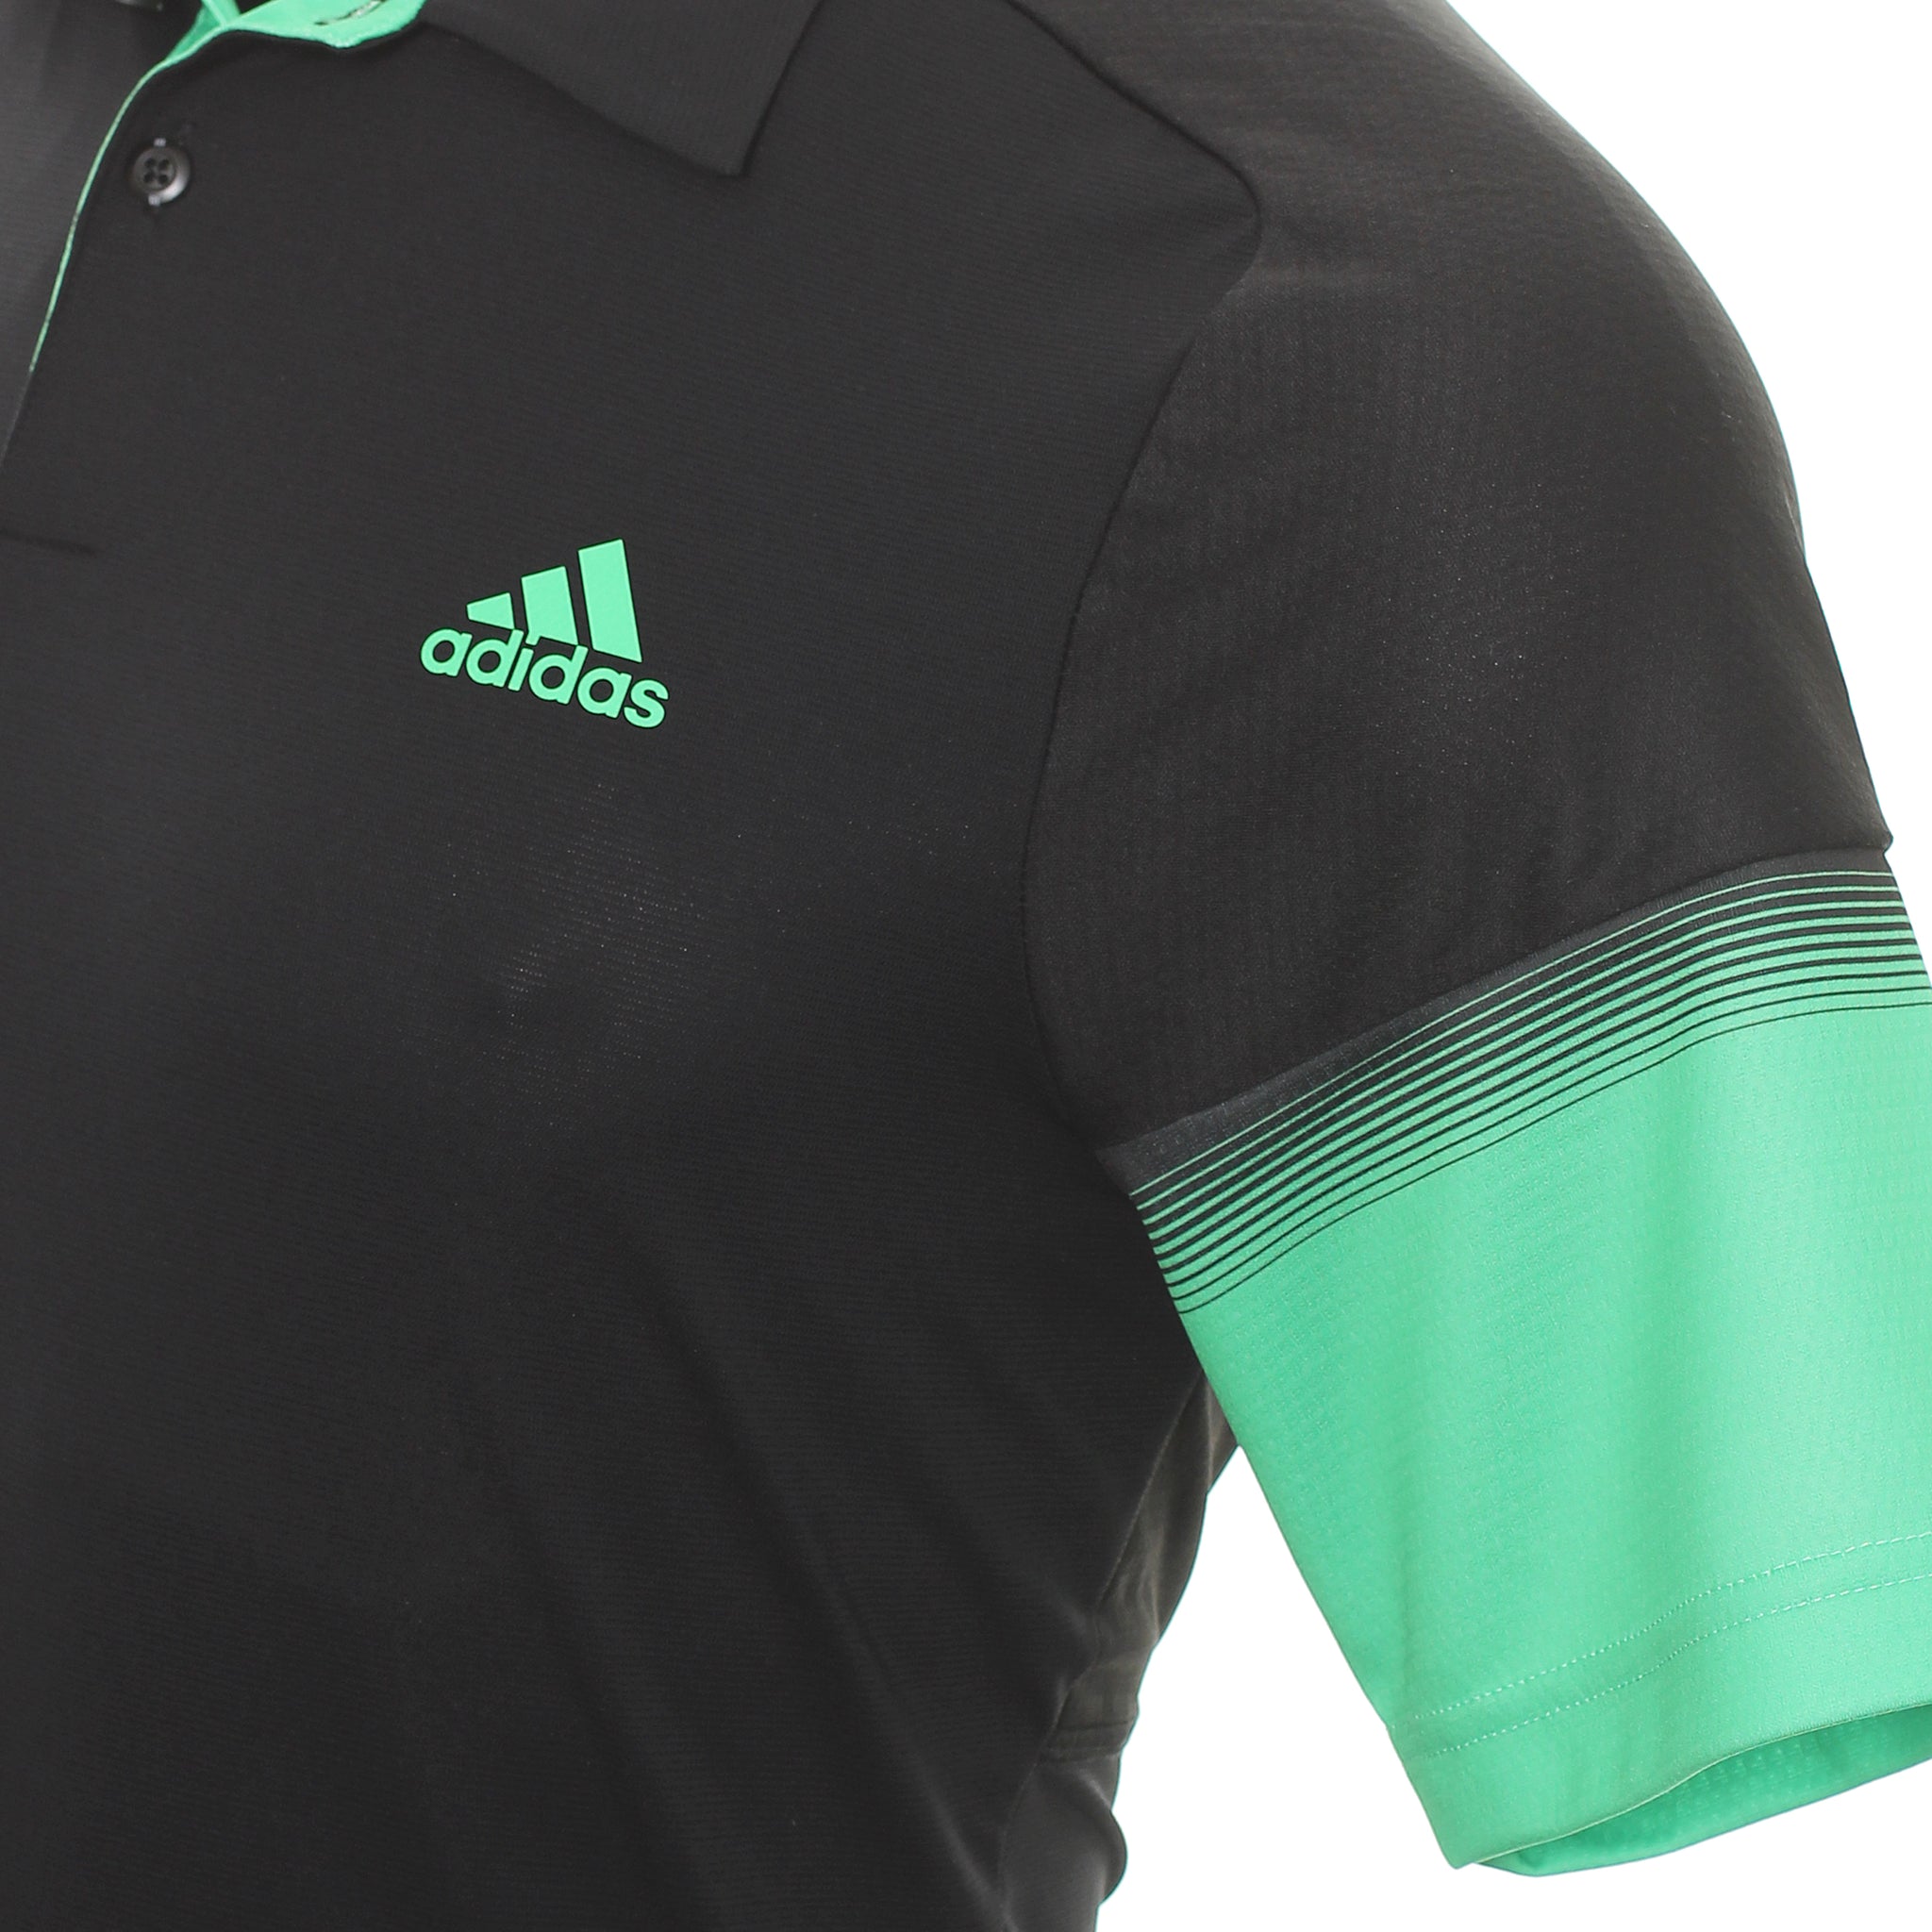 adidas-golf-statement-heat-rdy-shirt-gu5083-black